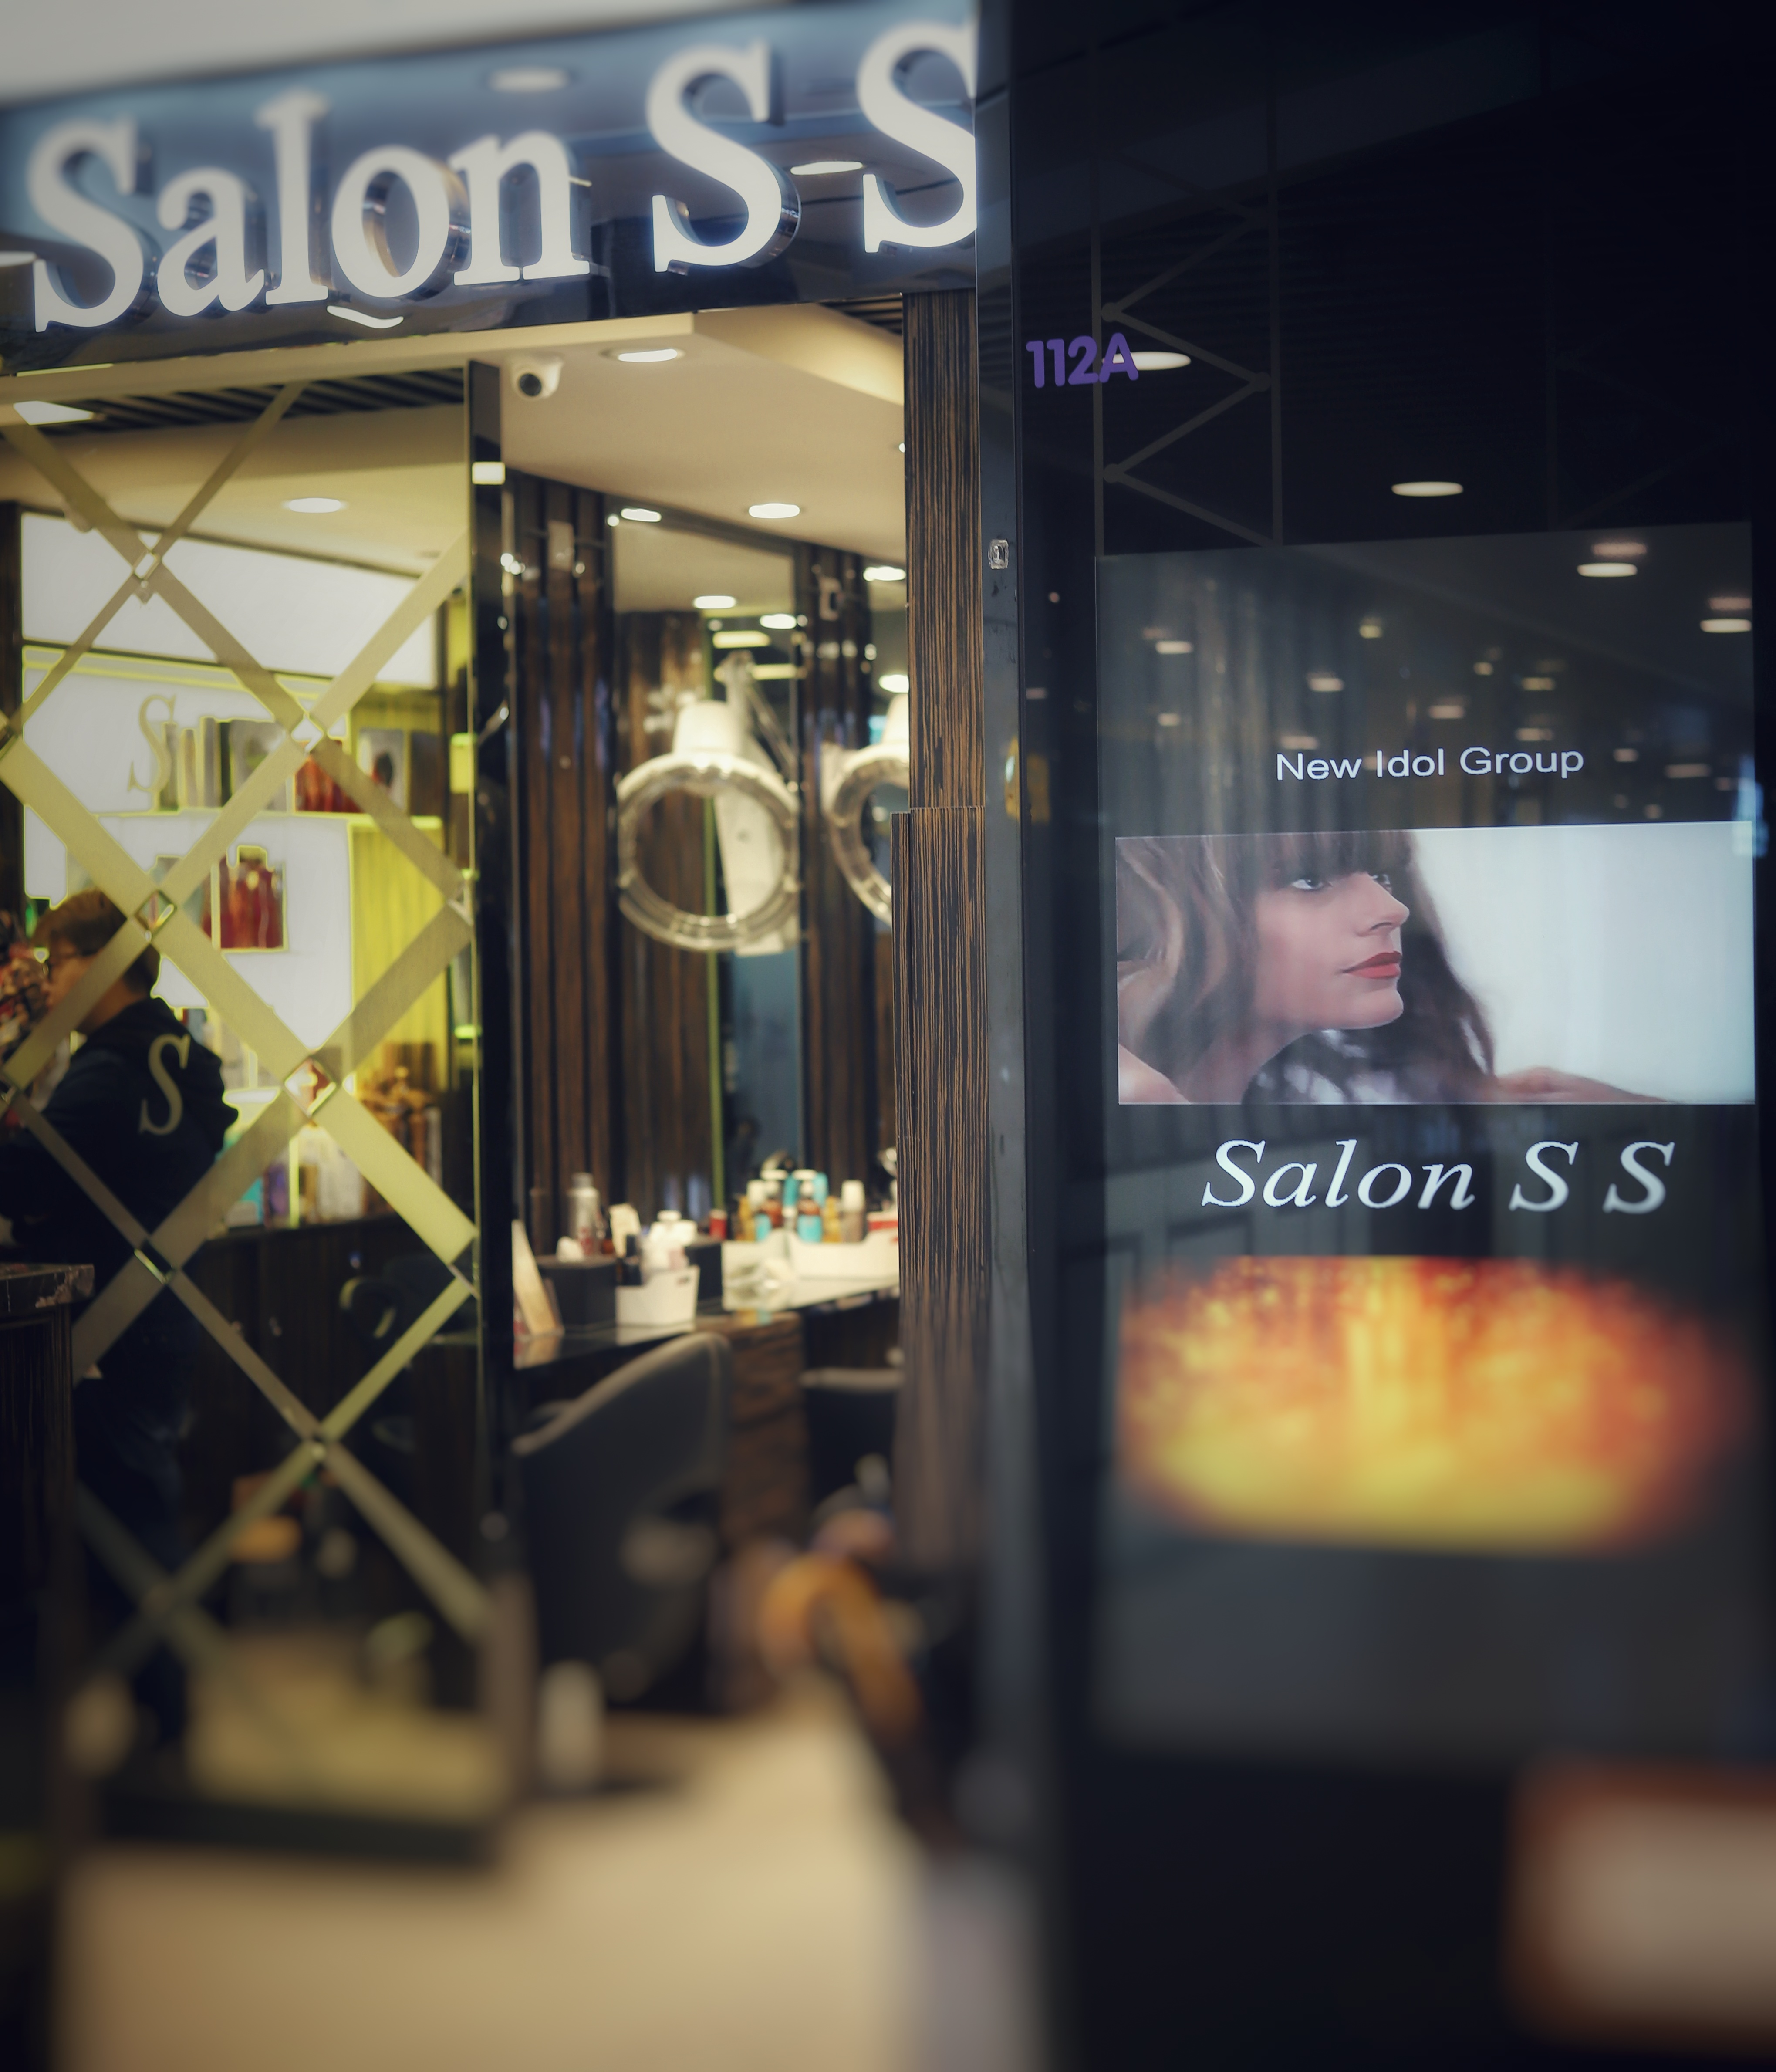 Salon S S (東涌)髮型屋Salon/髮型師工作招聘:聘髮型師、助理、技術員